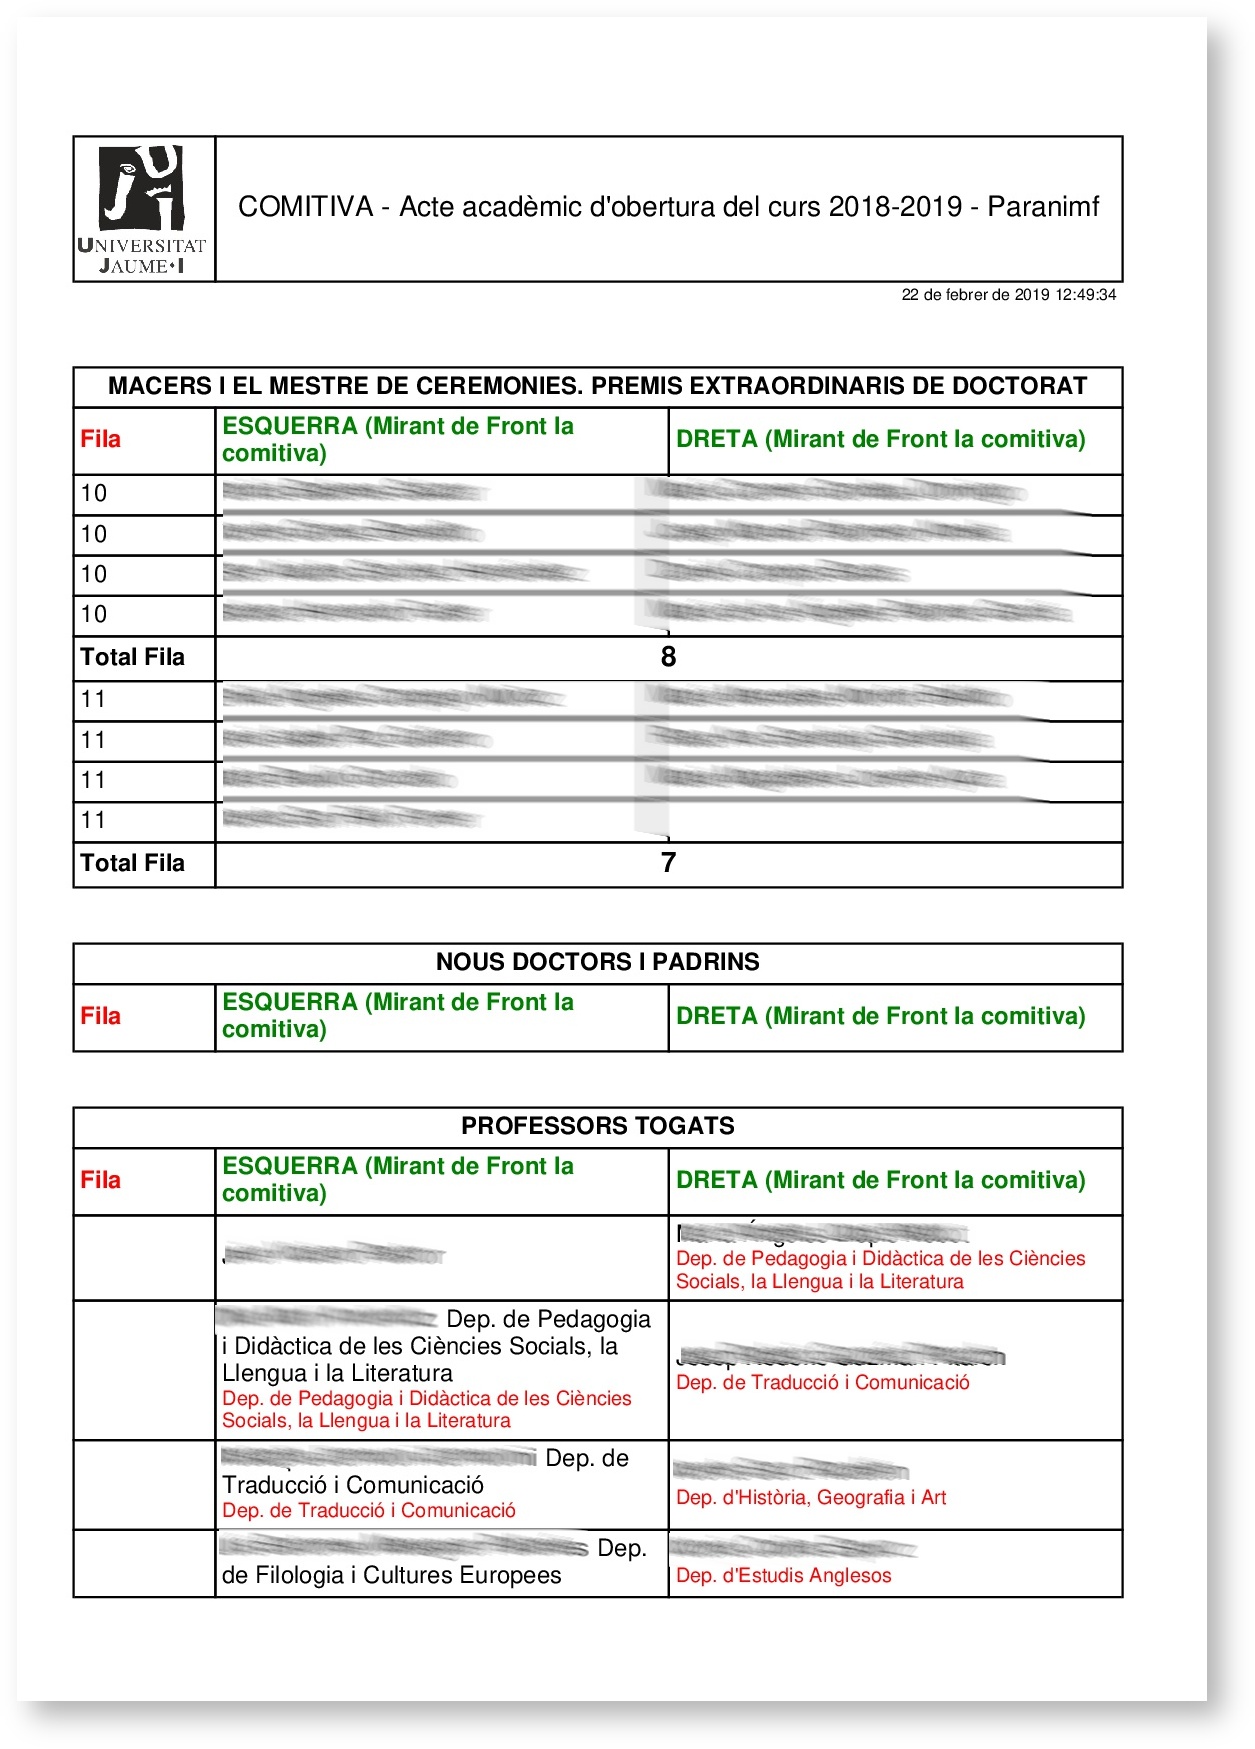 Exemple de document de la comitiva 